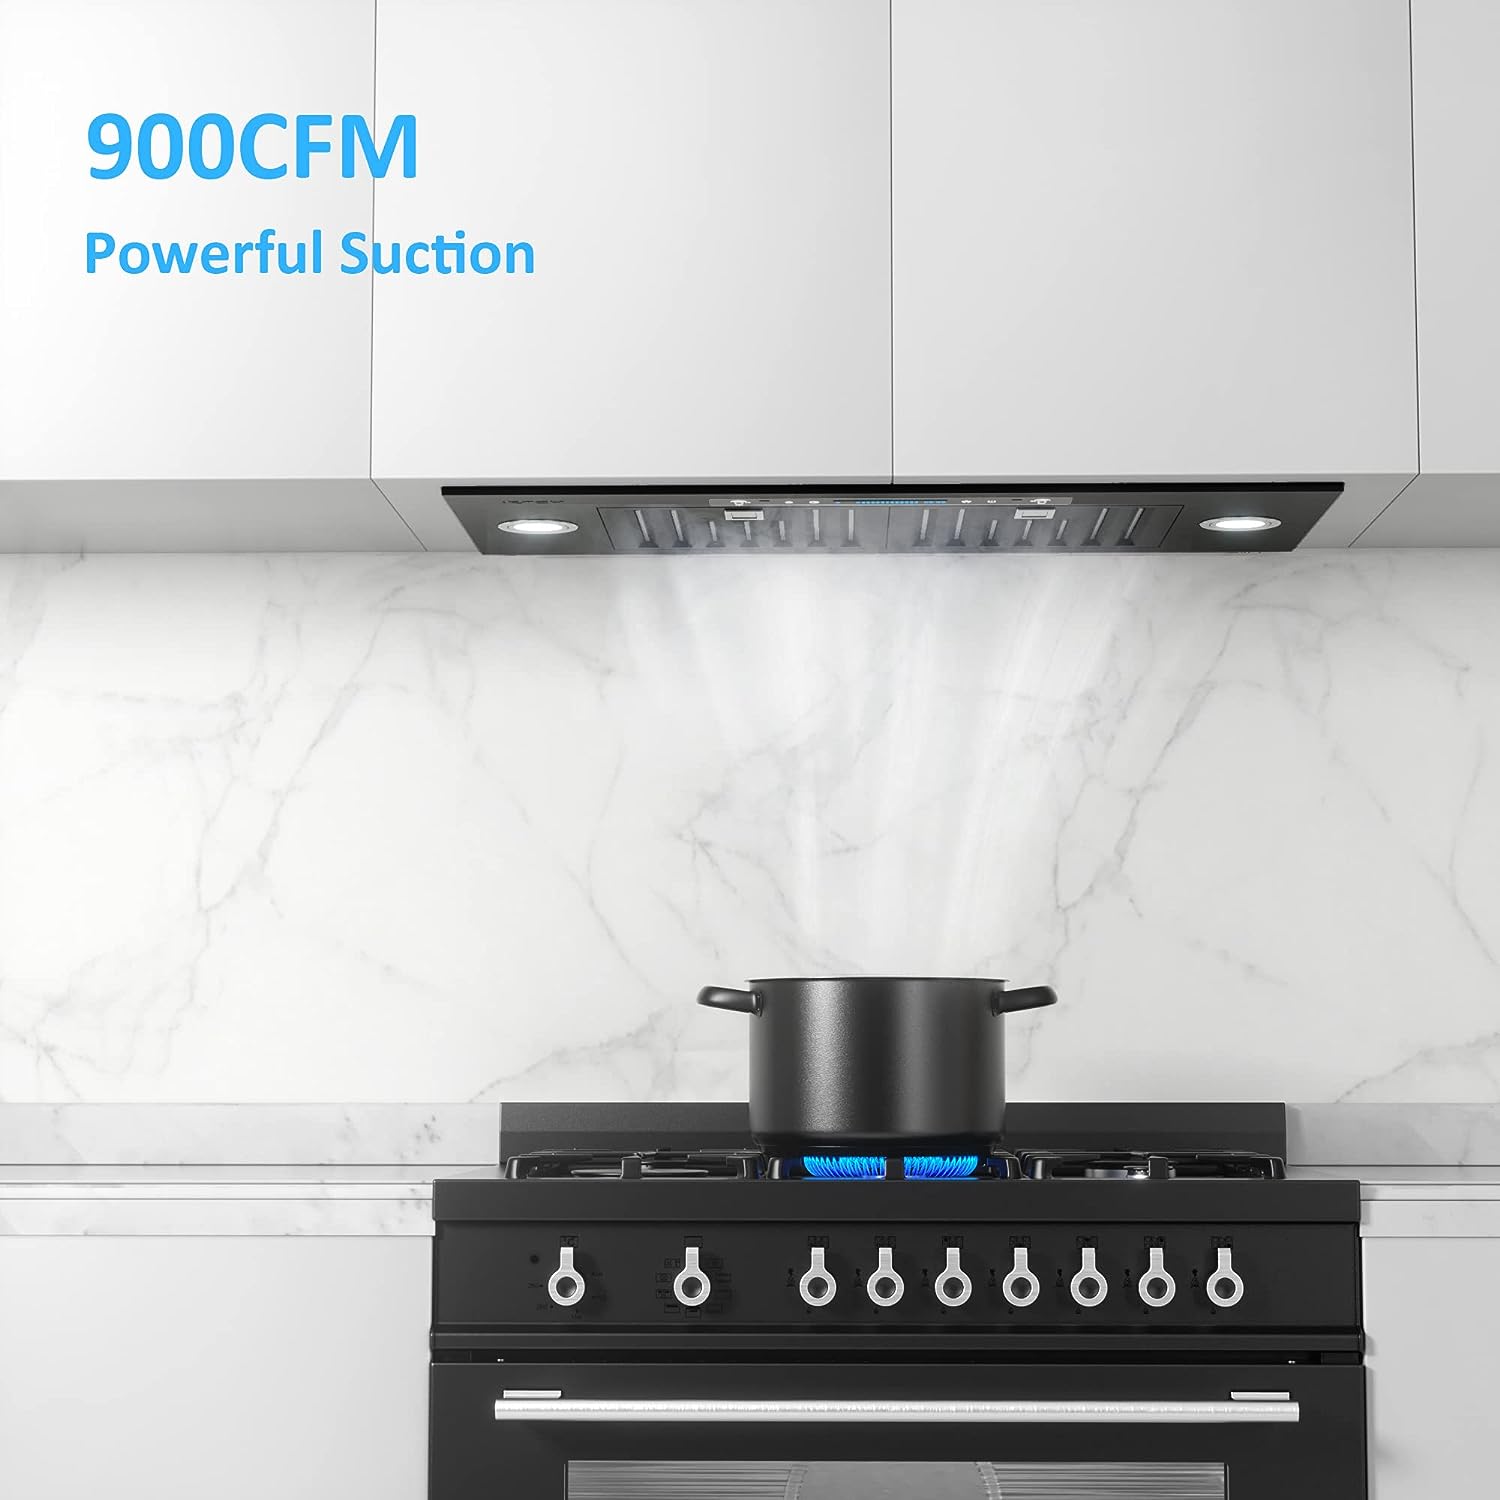 IKTCH 30 inch Black Under Cabinet Range Hood, 900-CFM 4 Speed Touch Control, Ultra-Quiet Kitchen Exhaust with Gesture Sensing - 30 inch